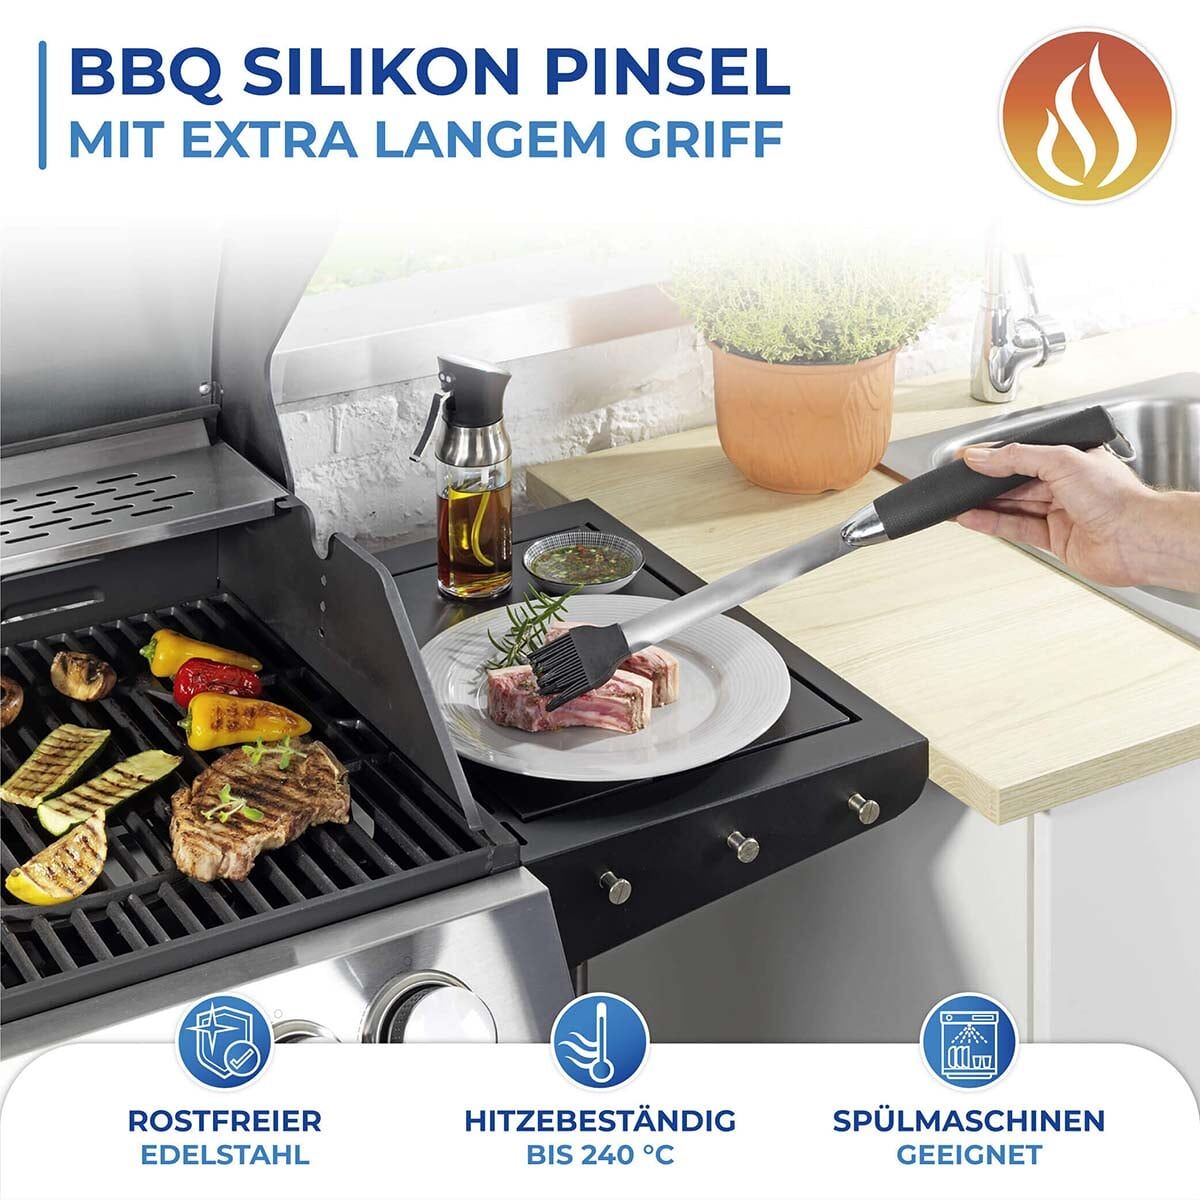 BBQ Premium Silikon Pinsel extra lang